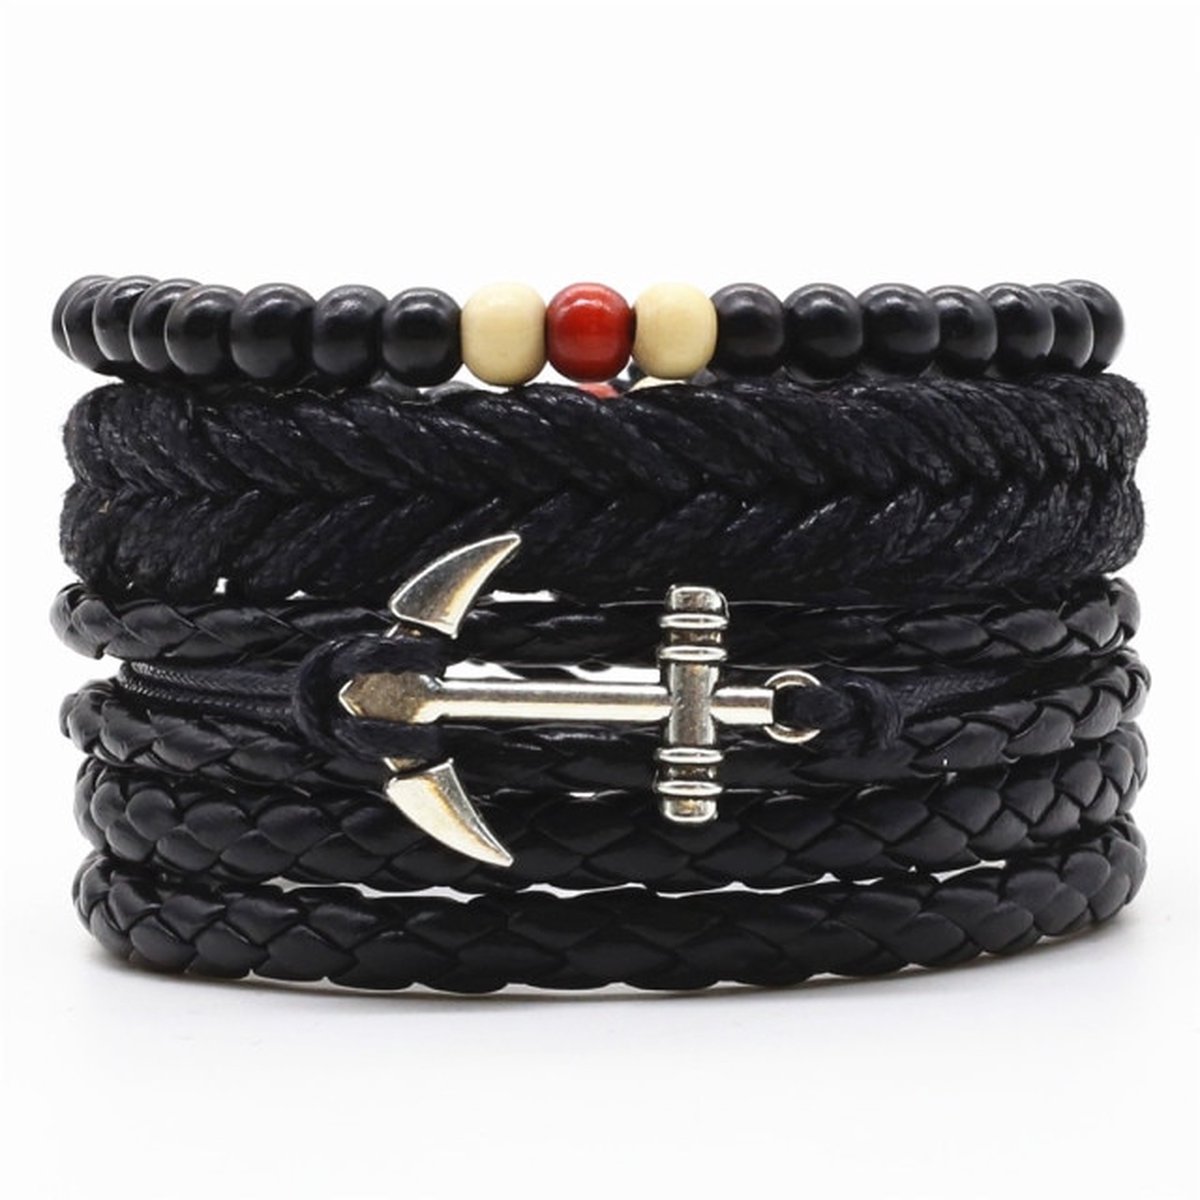 Leren armbanden set met houten kralen en touw | leren - natuurstenen - hout - kralen - geschenk | 20 - 25 cm flexibel Valentijns cadeau